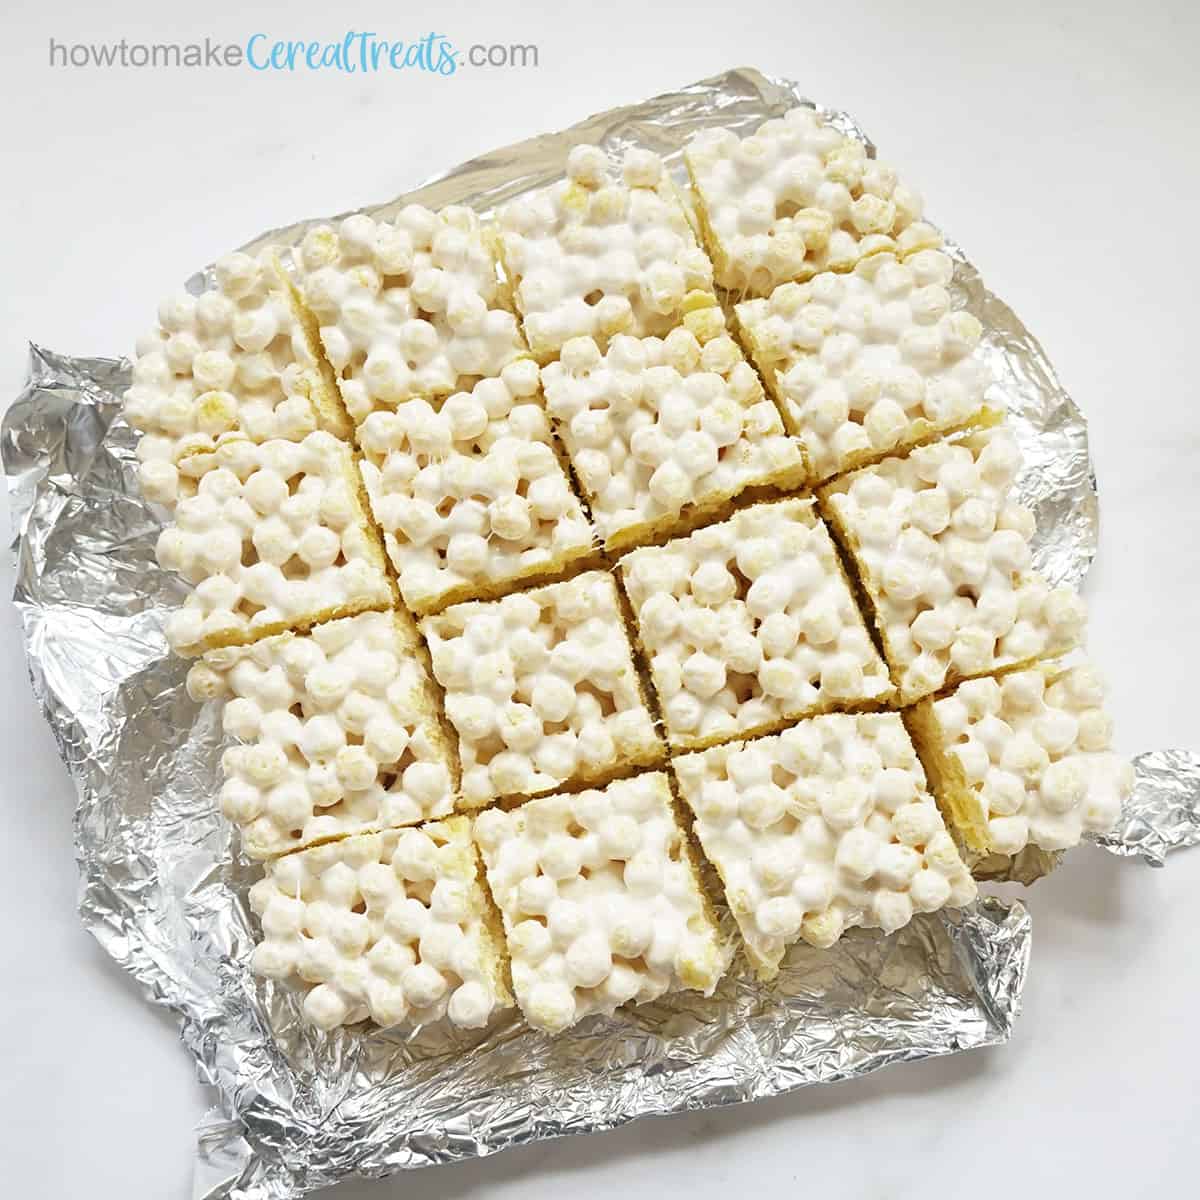 Kix cereal treats cut into 16 squares